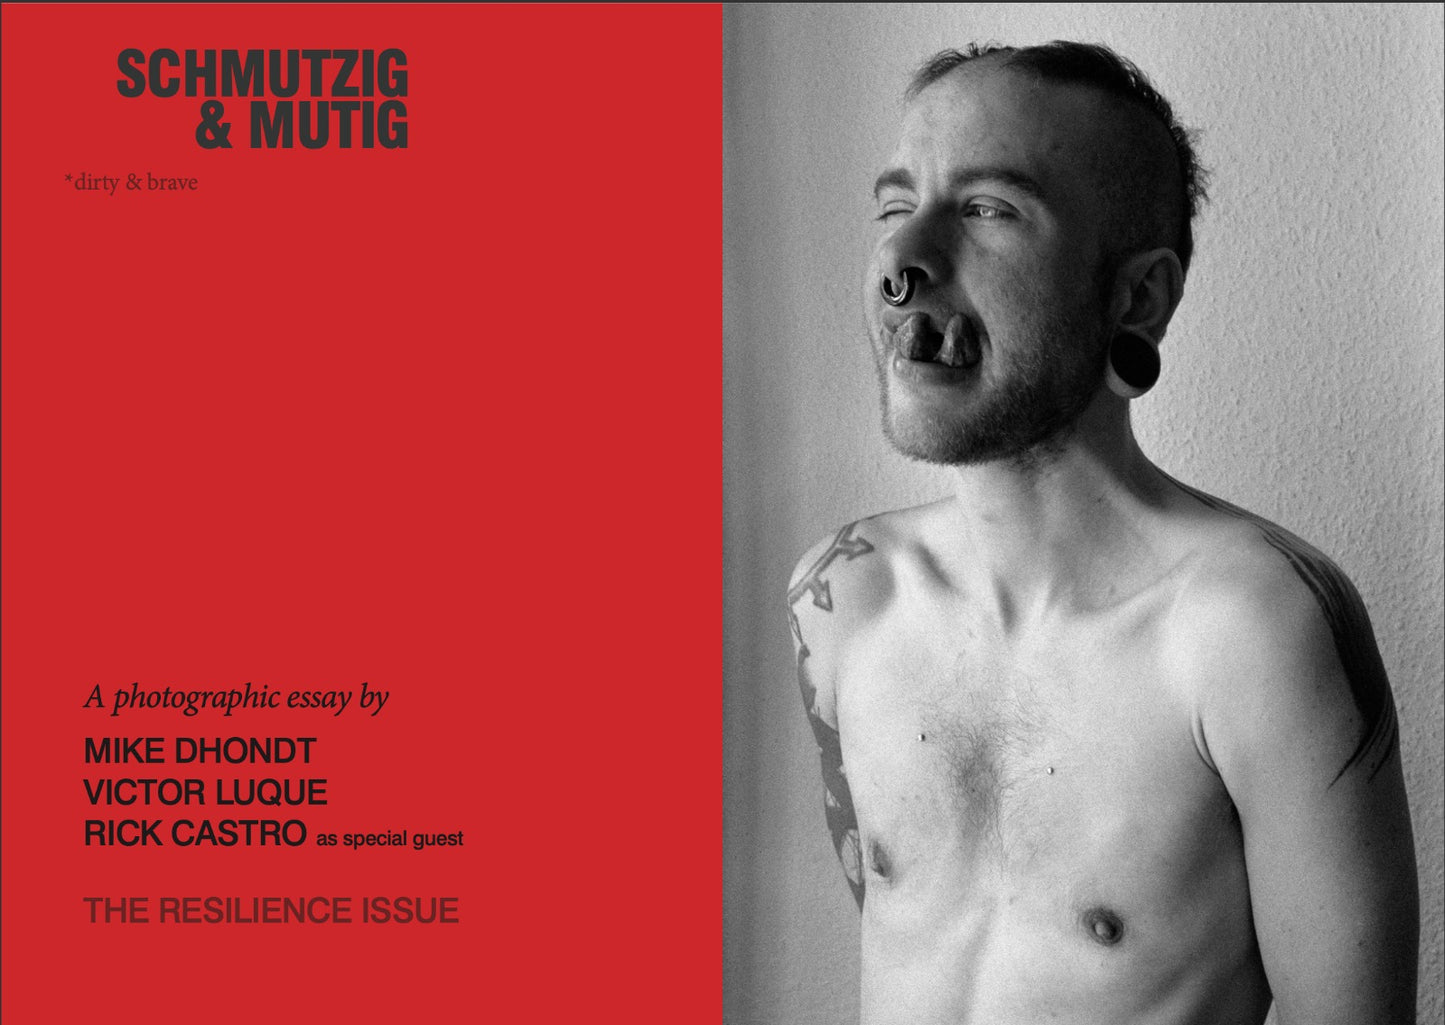 Schmutzig & Mutig Magazine #2